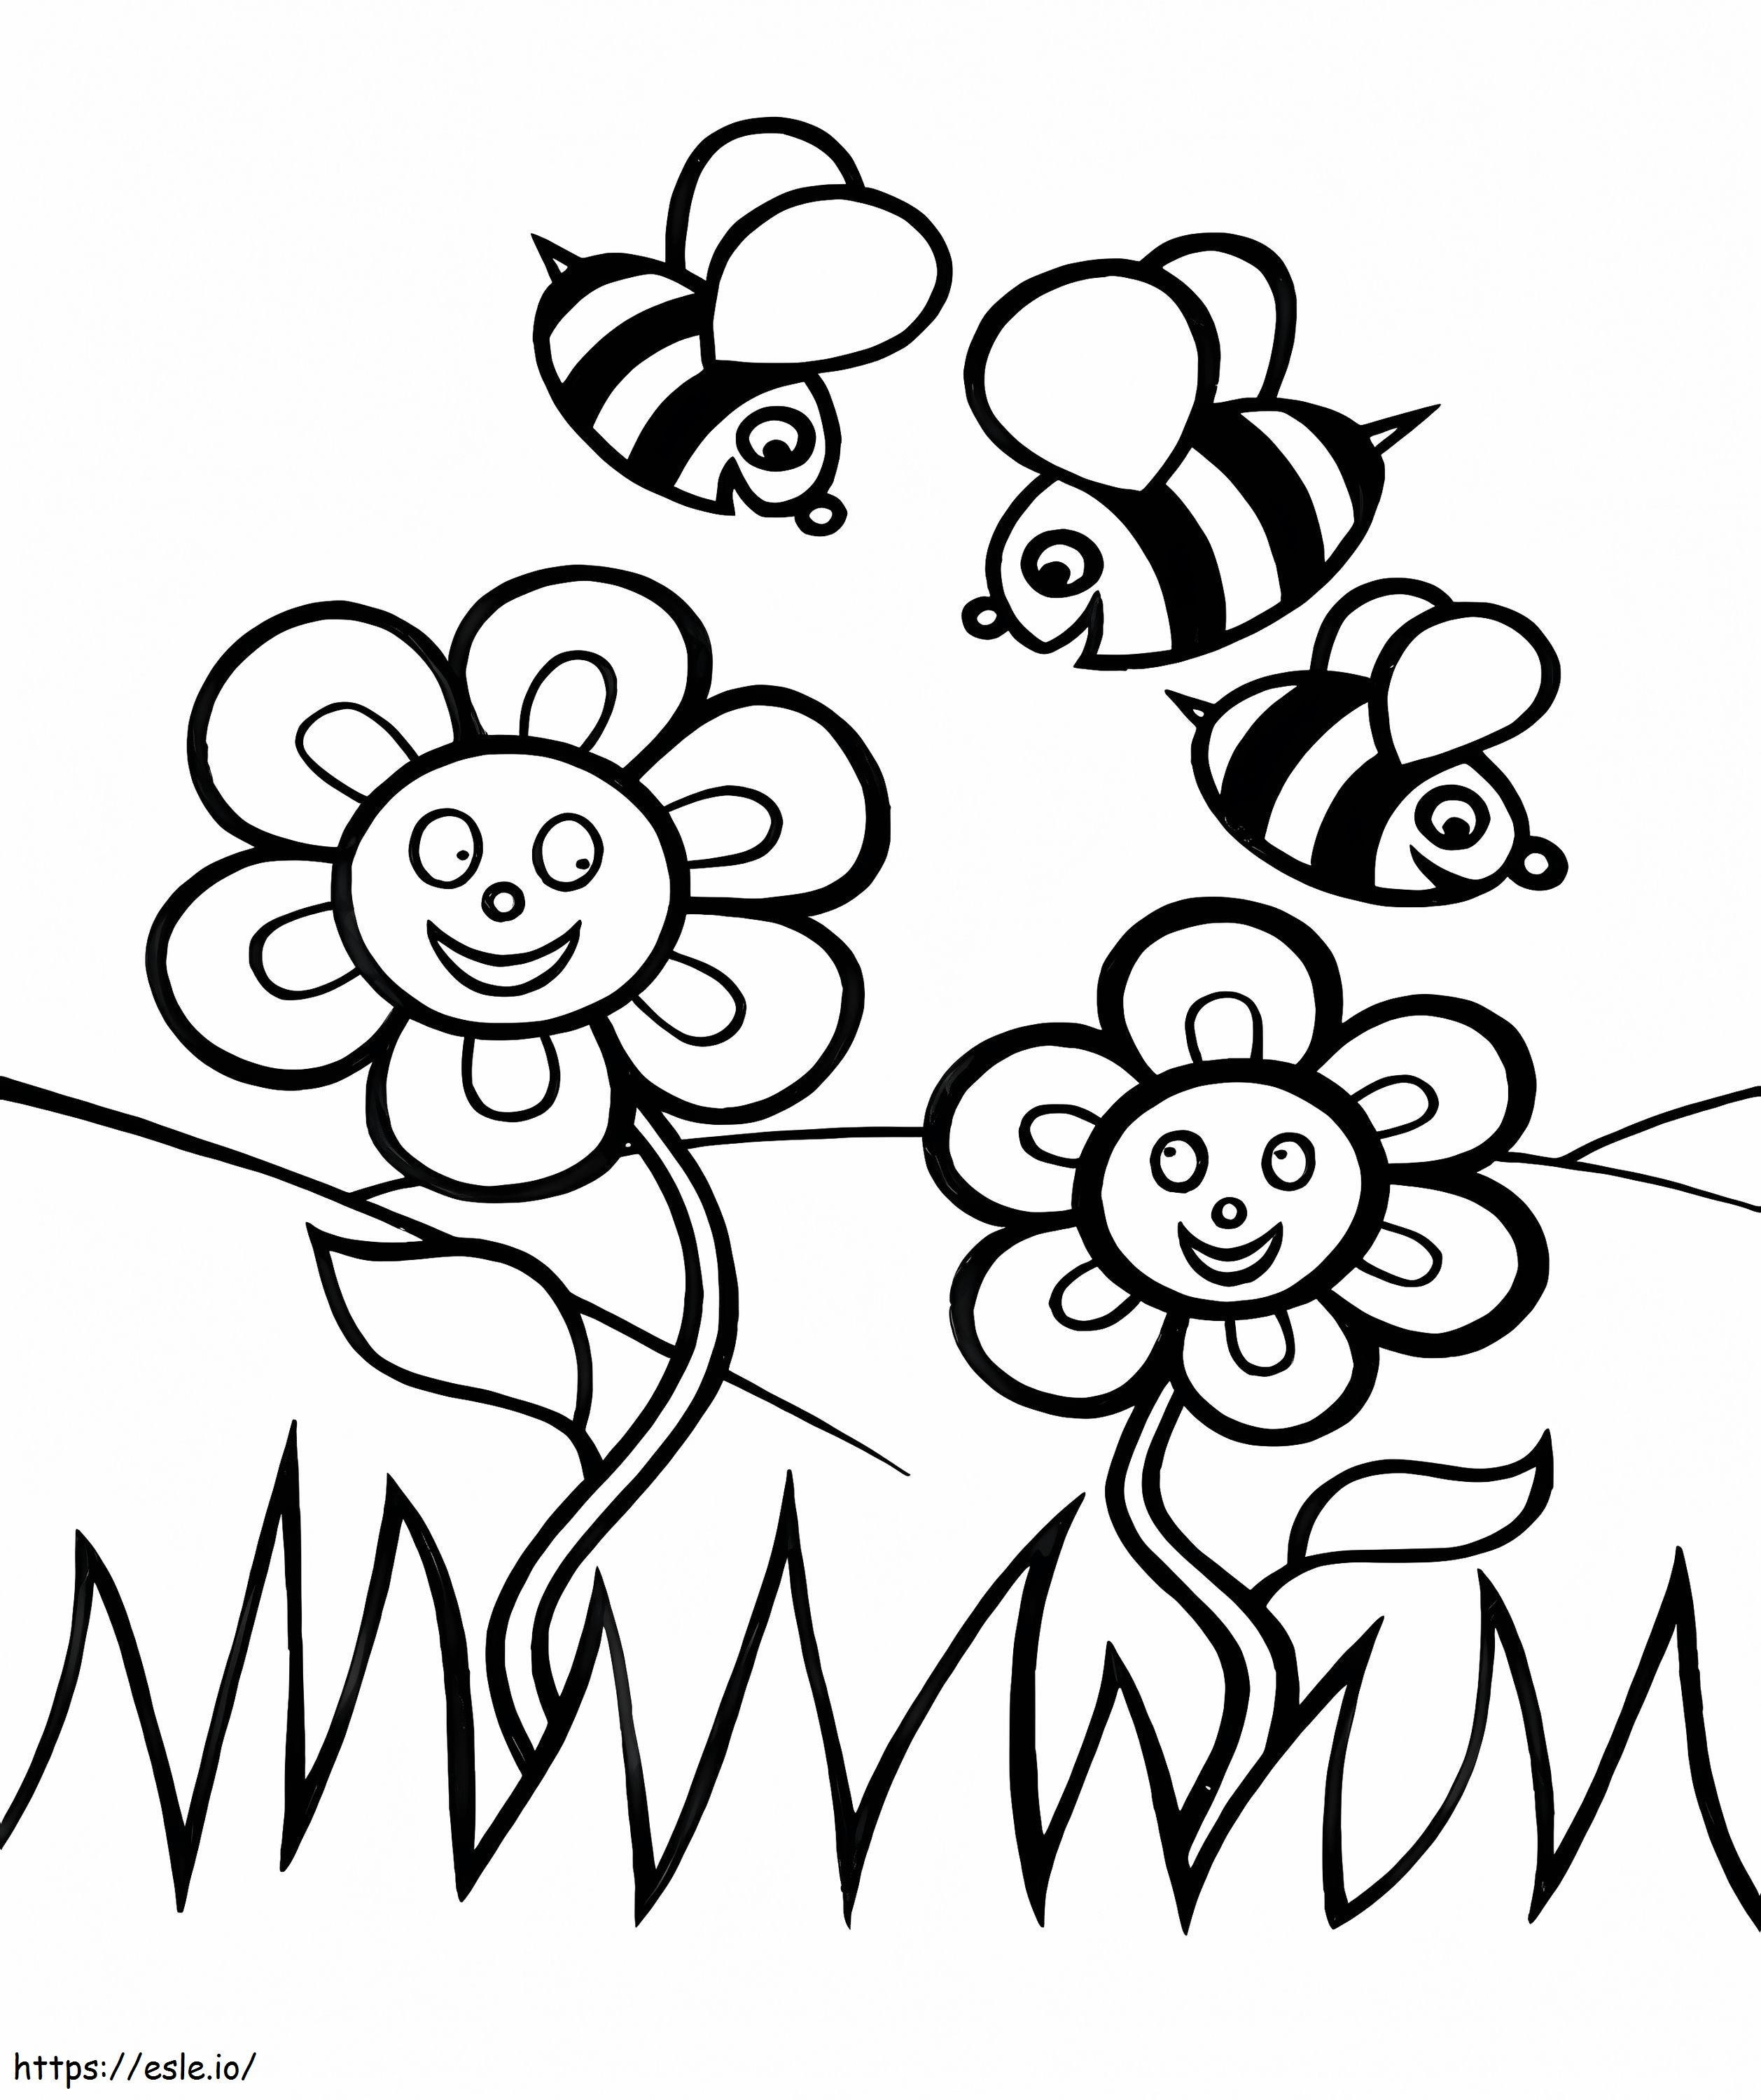 Drei Bienen mit Blumen ausmalbilder